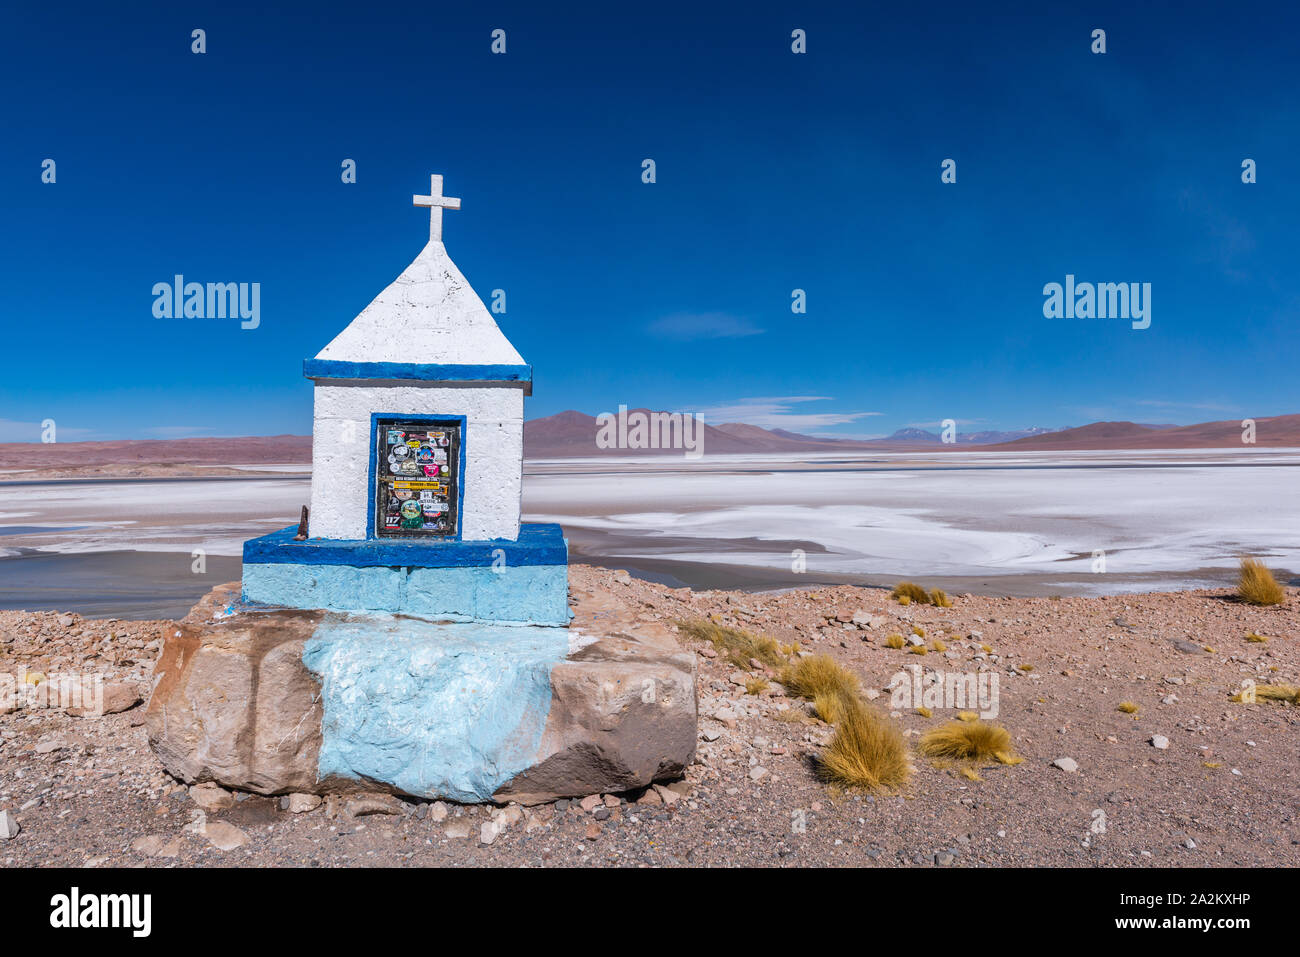 A lo largo de la carretera nacional desde San Pedro de Atacama, Chile, a la ciudad fronteriza Argentina de Jama, República de Chile, América Latina Foto de stock